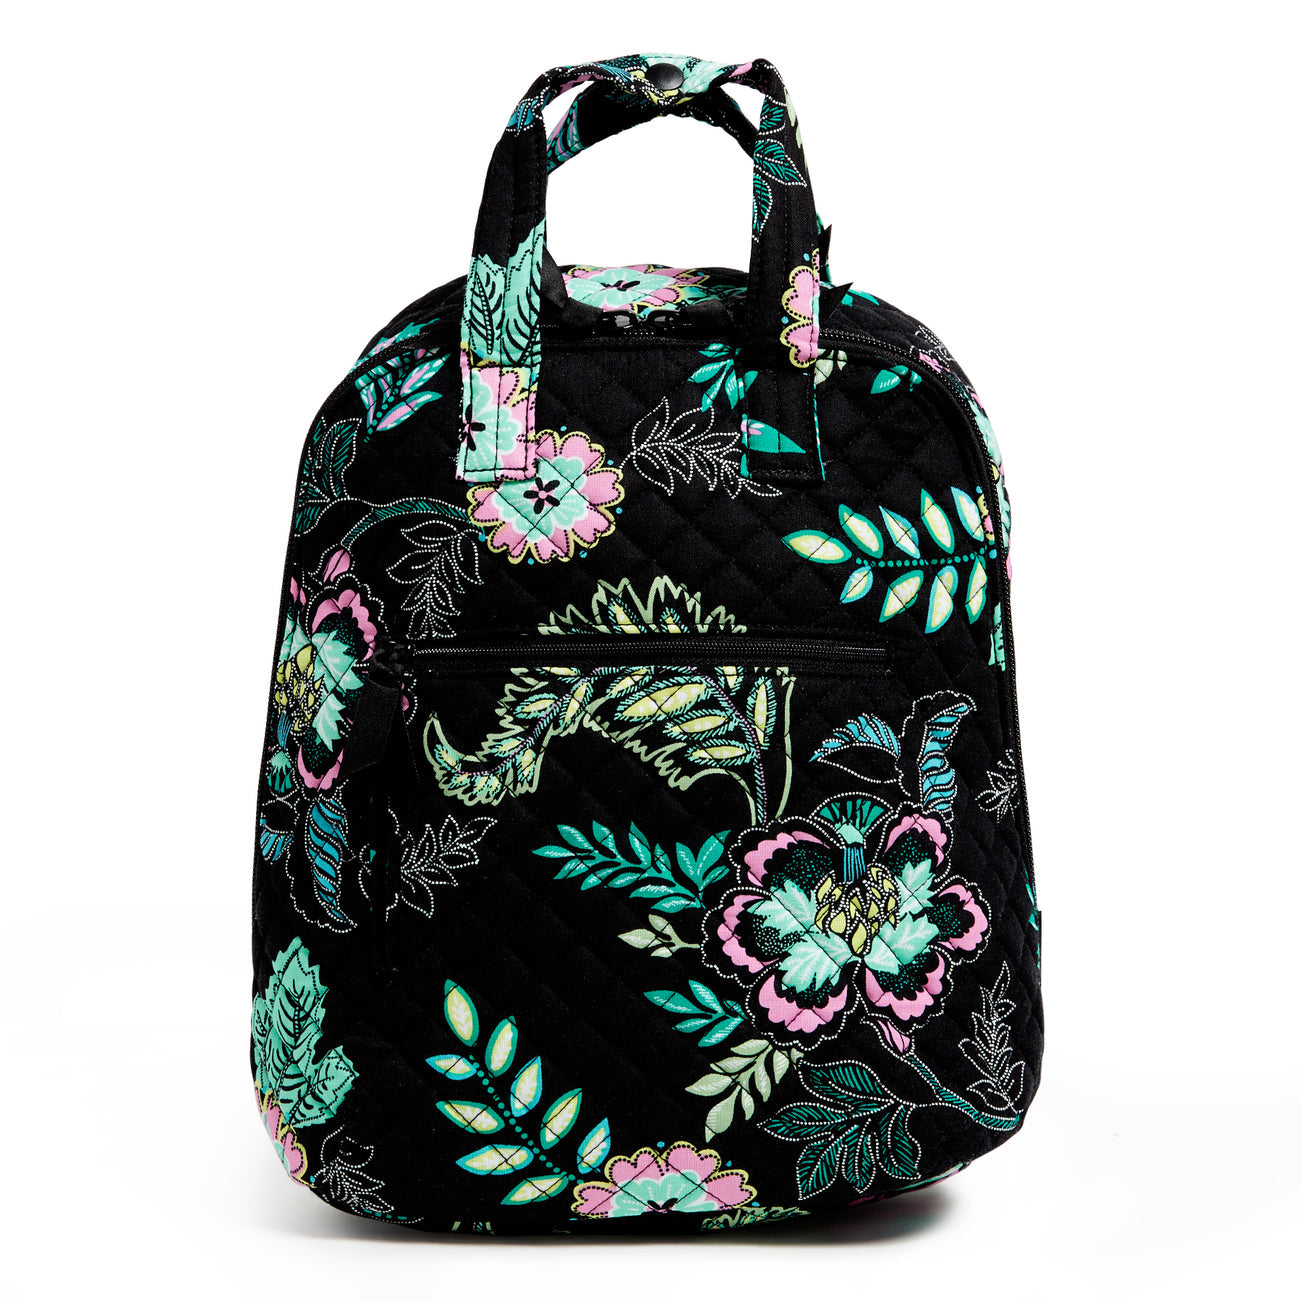 Vera Bradley Mini Totepack Bag In Island Garden Pattern.